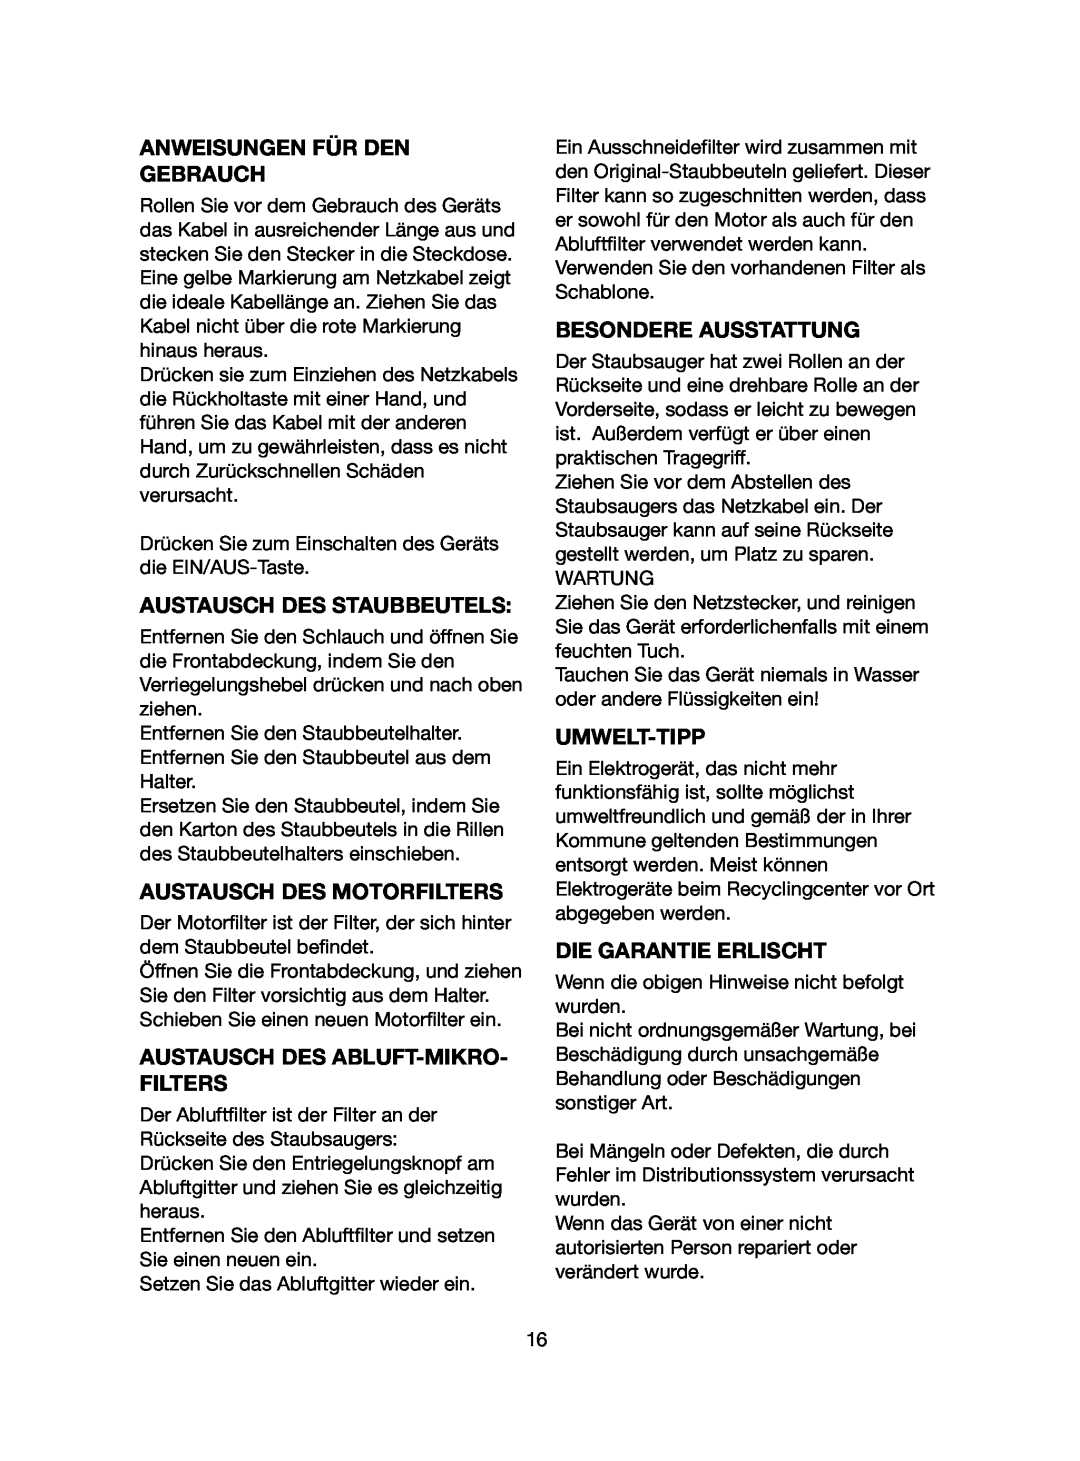 Melissa 740-107 manual Anweisungen Für Den Gebrauch, Austausch Des Staubbeutels, Austausch Des Motorfilters, Umwelt-Tipp 